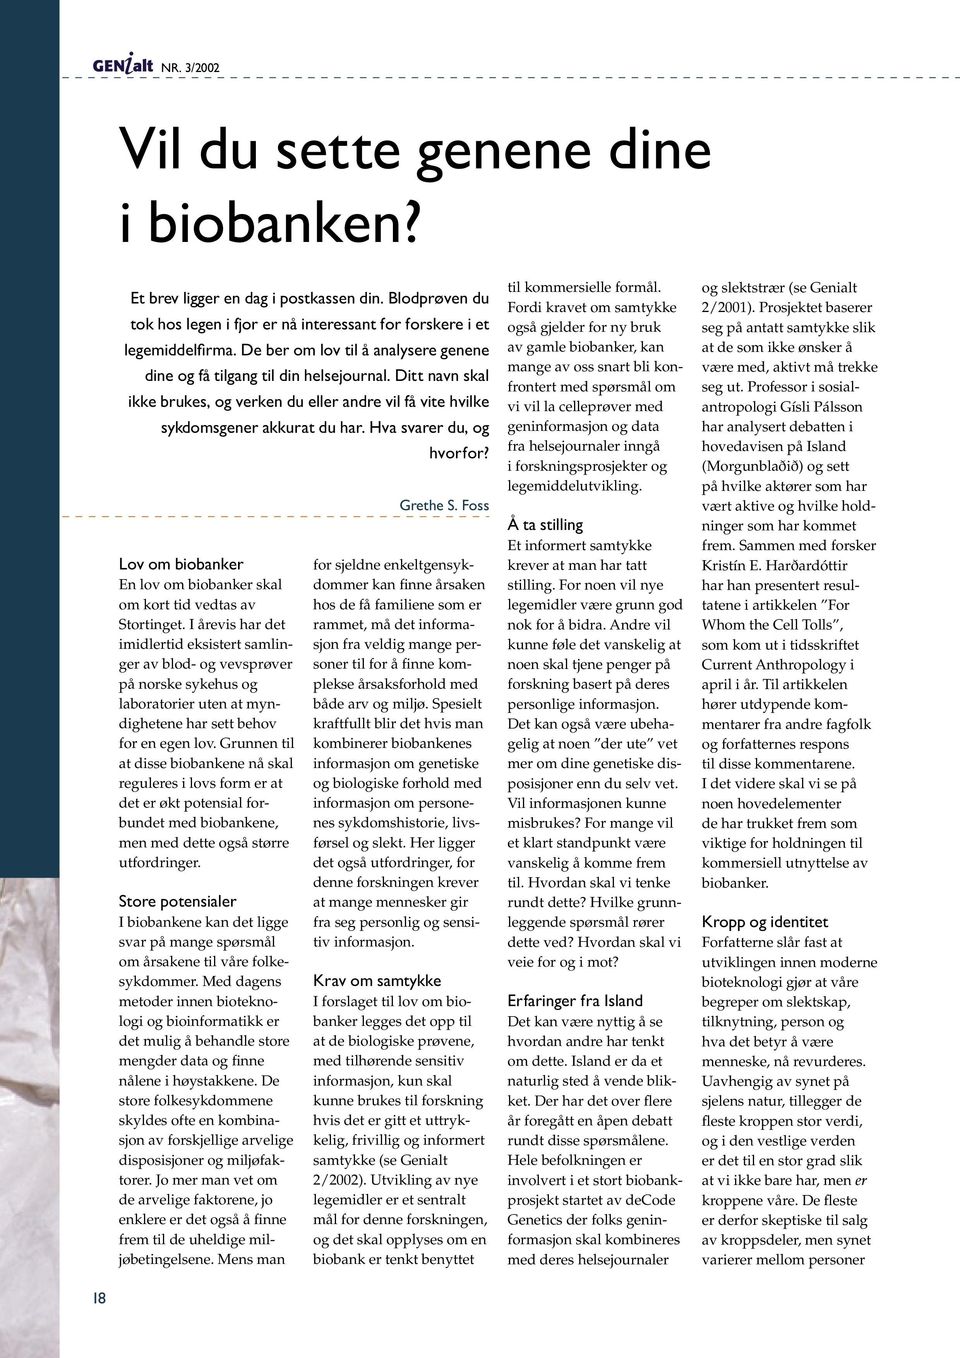 Hva svarer du, og Lov om biobanker En lov om biobanker skal om kort tid vedtas av Stortinget.